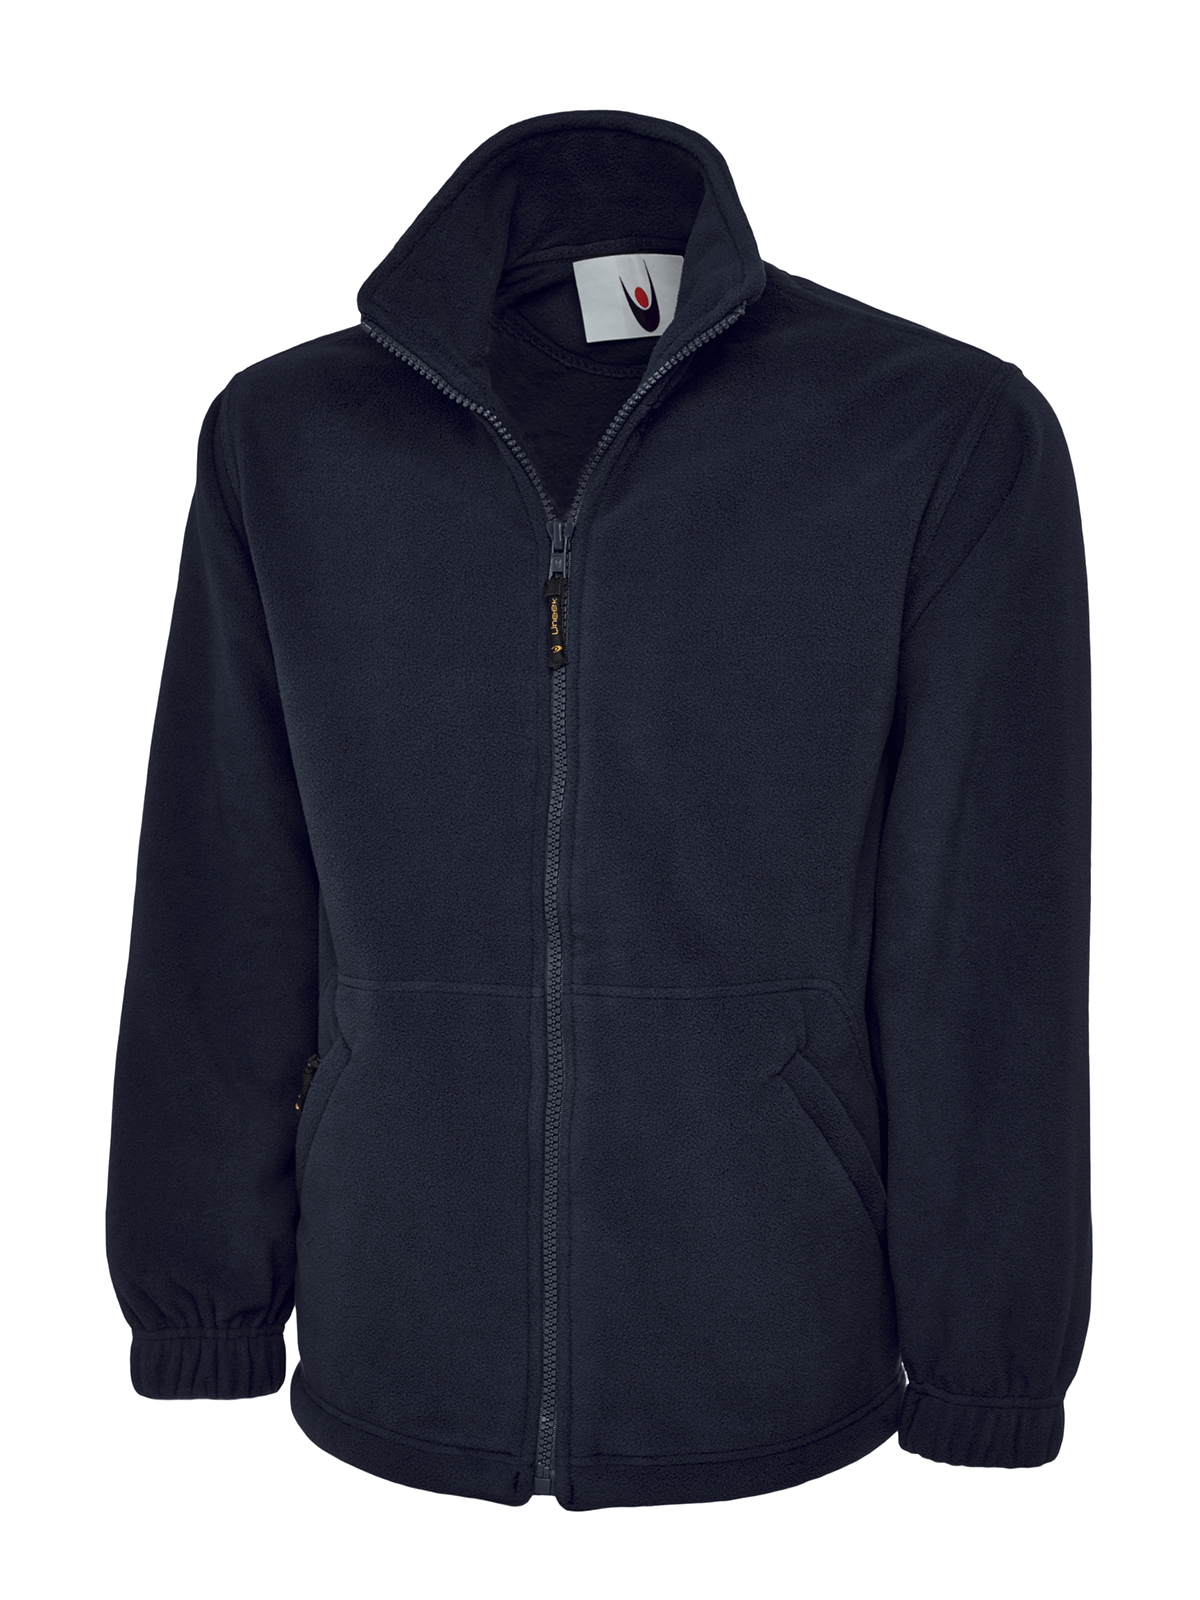 Full Zip Fleece Jacket, Navy - Size XL